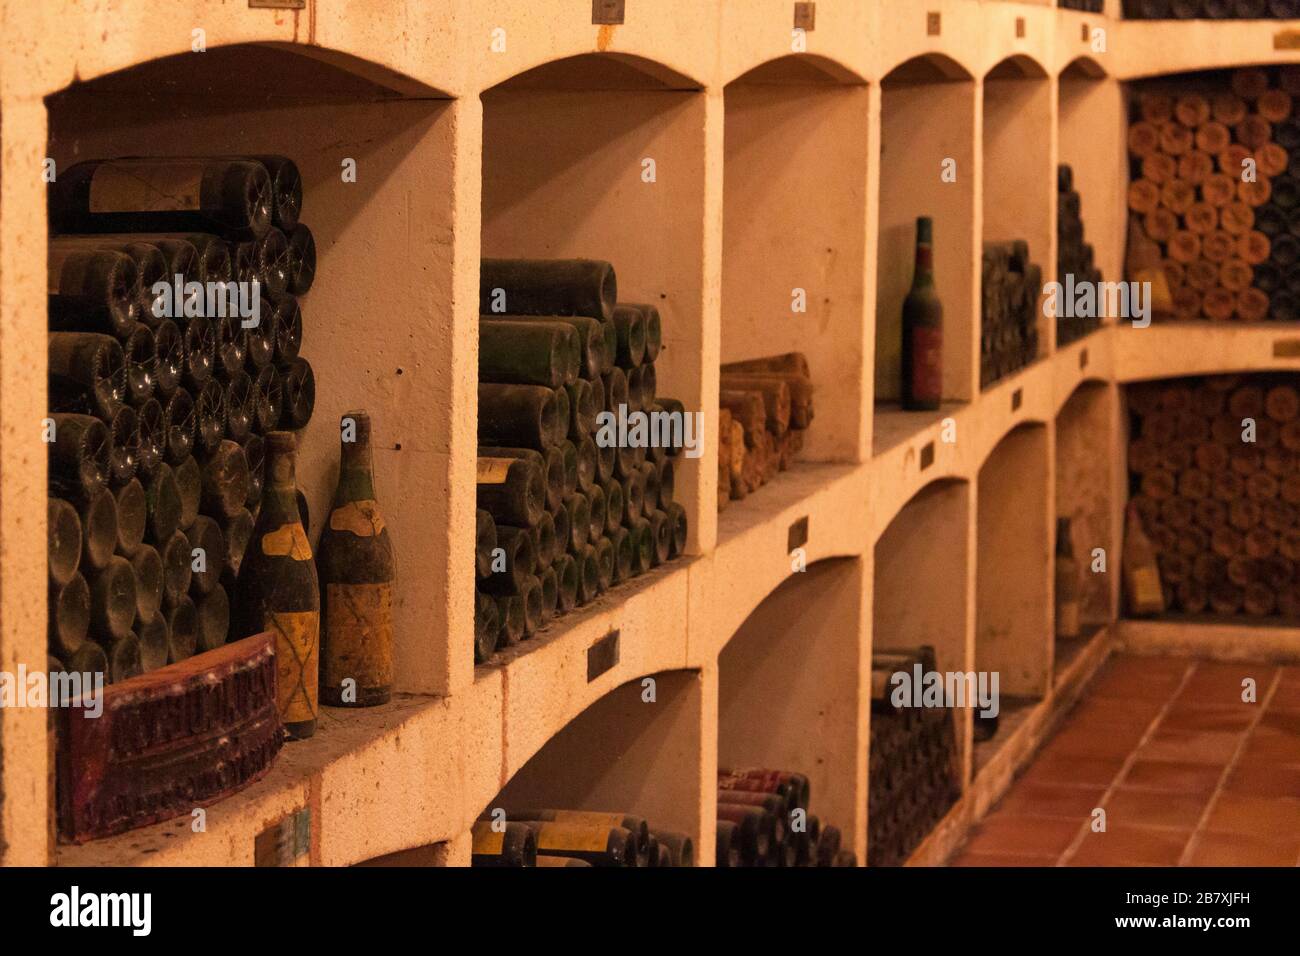 Botellas almacenadas. Stock Photo